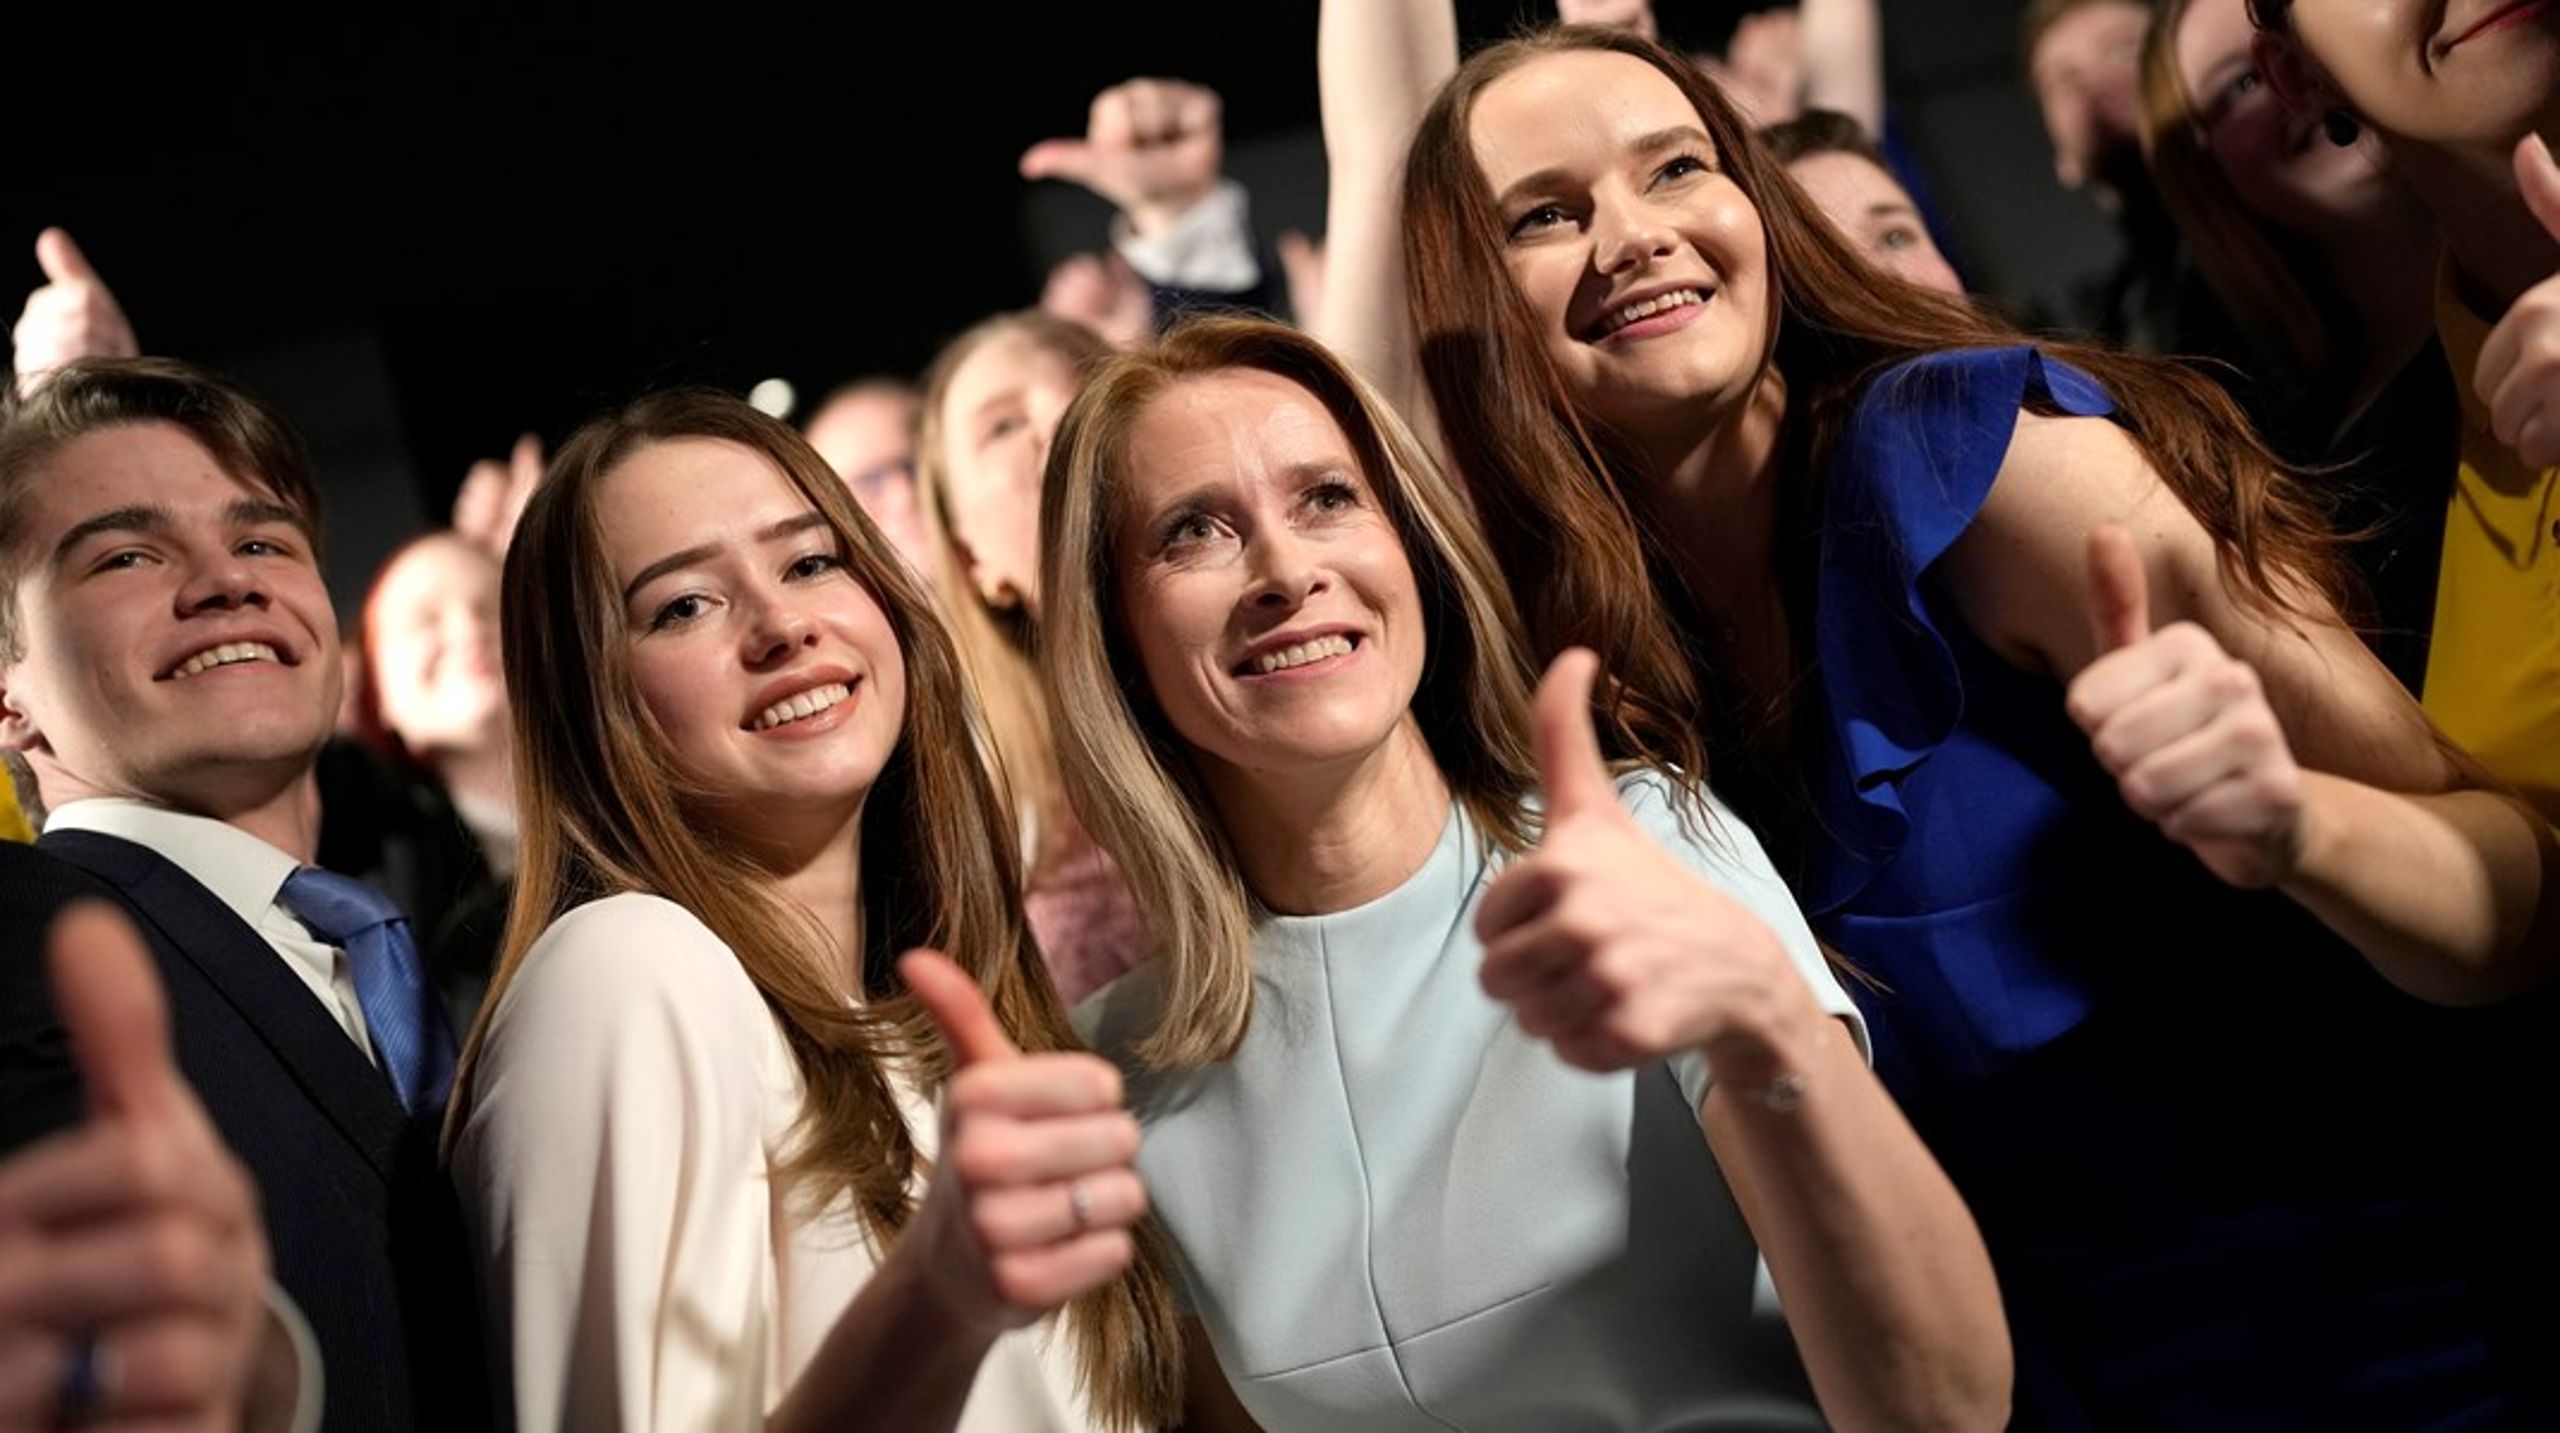 Statsminister Kaja Kallas har sikret seieren i det estiske valget, og sørget for at det liberale Reformpartiet får beholde makten i en periode til. Her fotografert sammen med partimedlemmer og tilhengere av Reformpartiet.